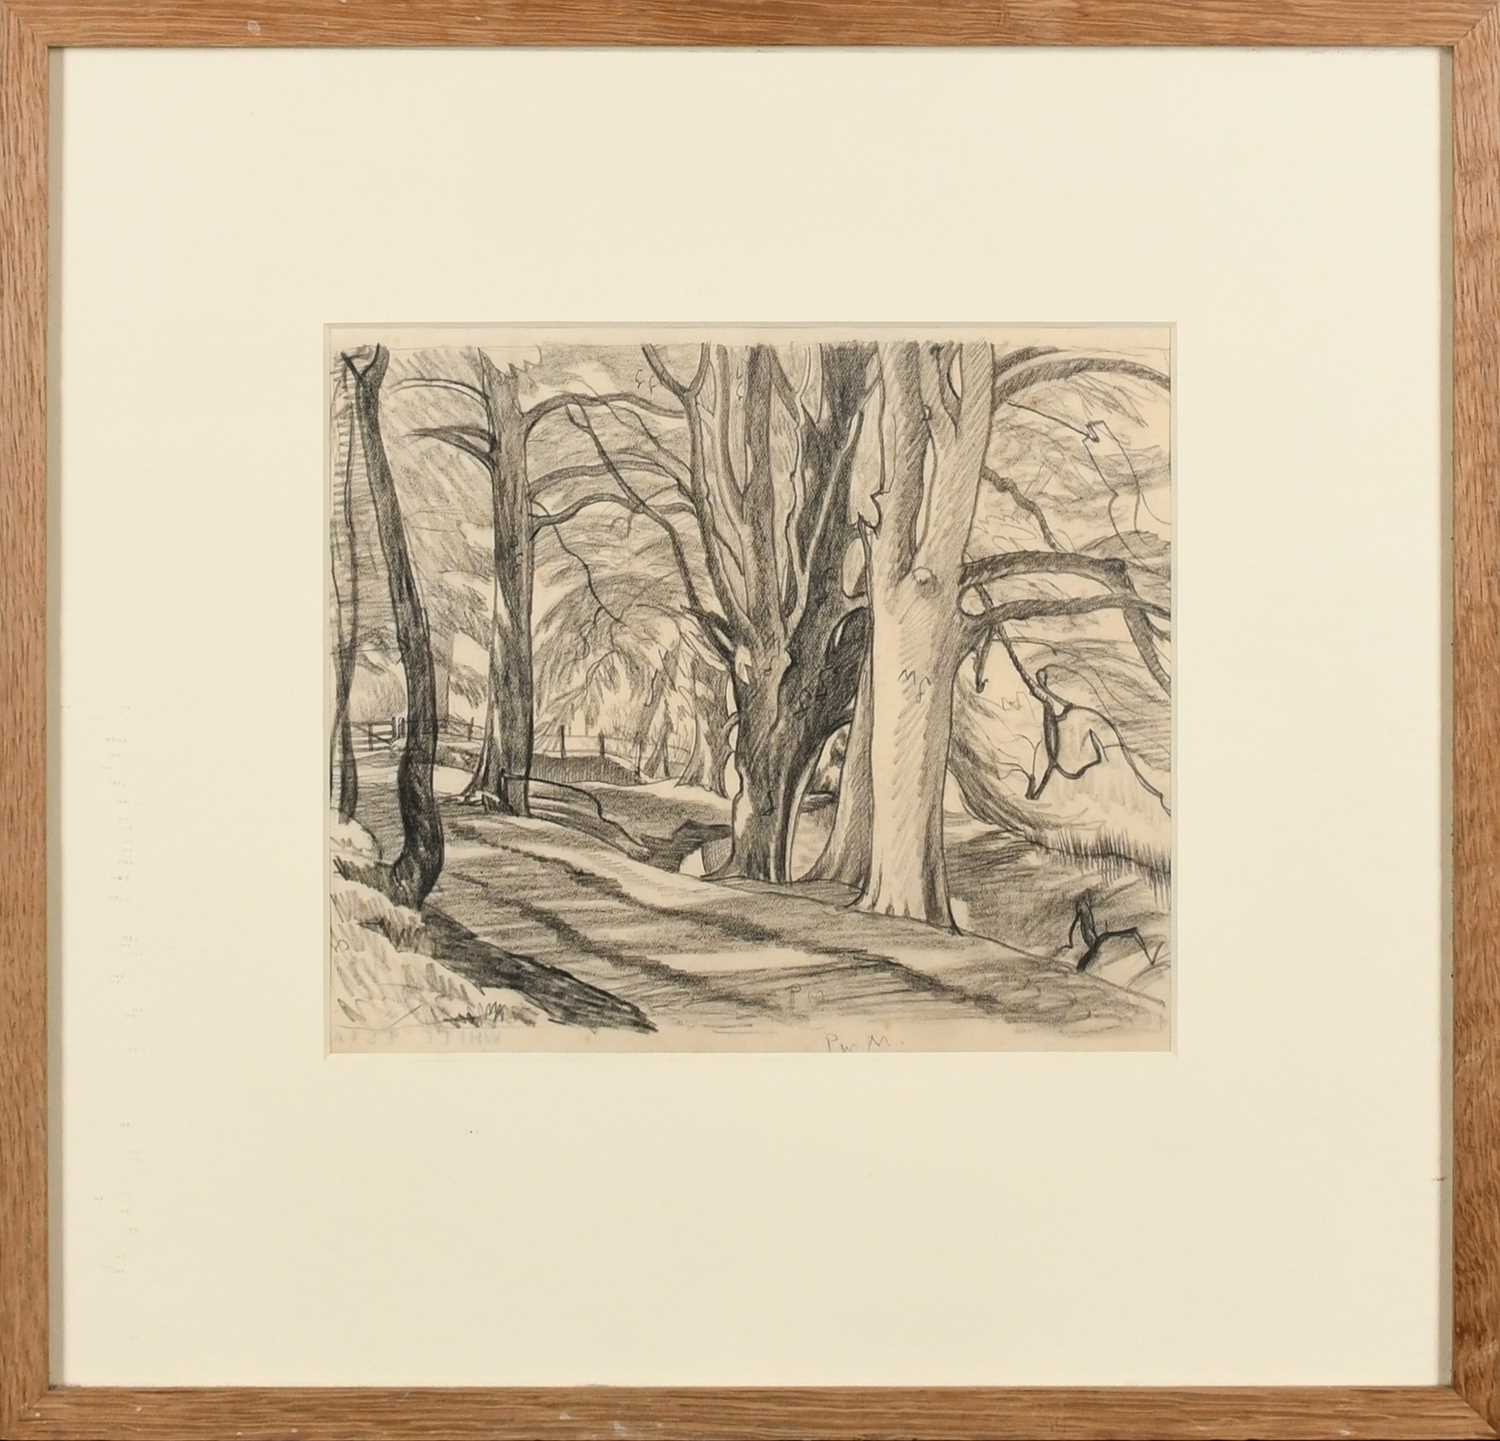 Φ Ethelbert White NEAC, RWS (1891-1972) Path through the woods Inscribed with colour notes - Image 2 of 4